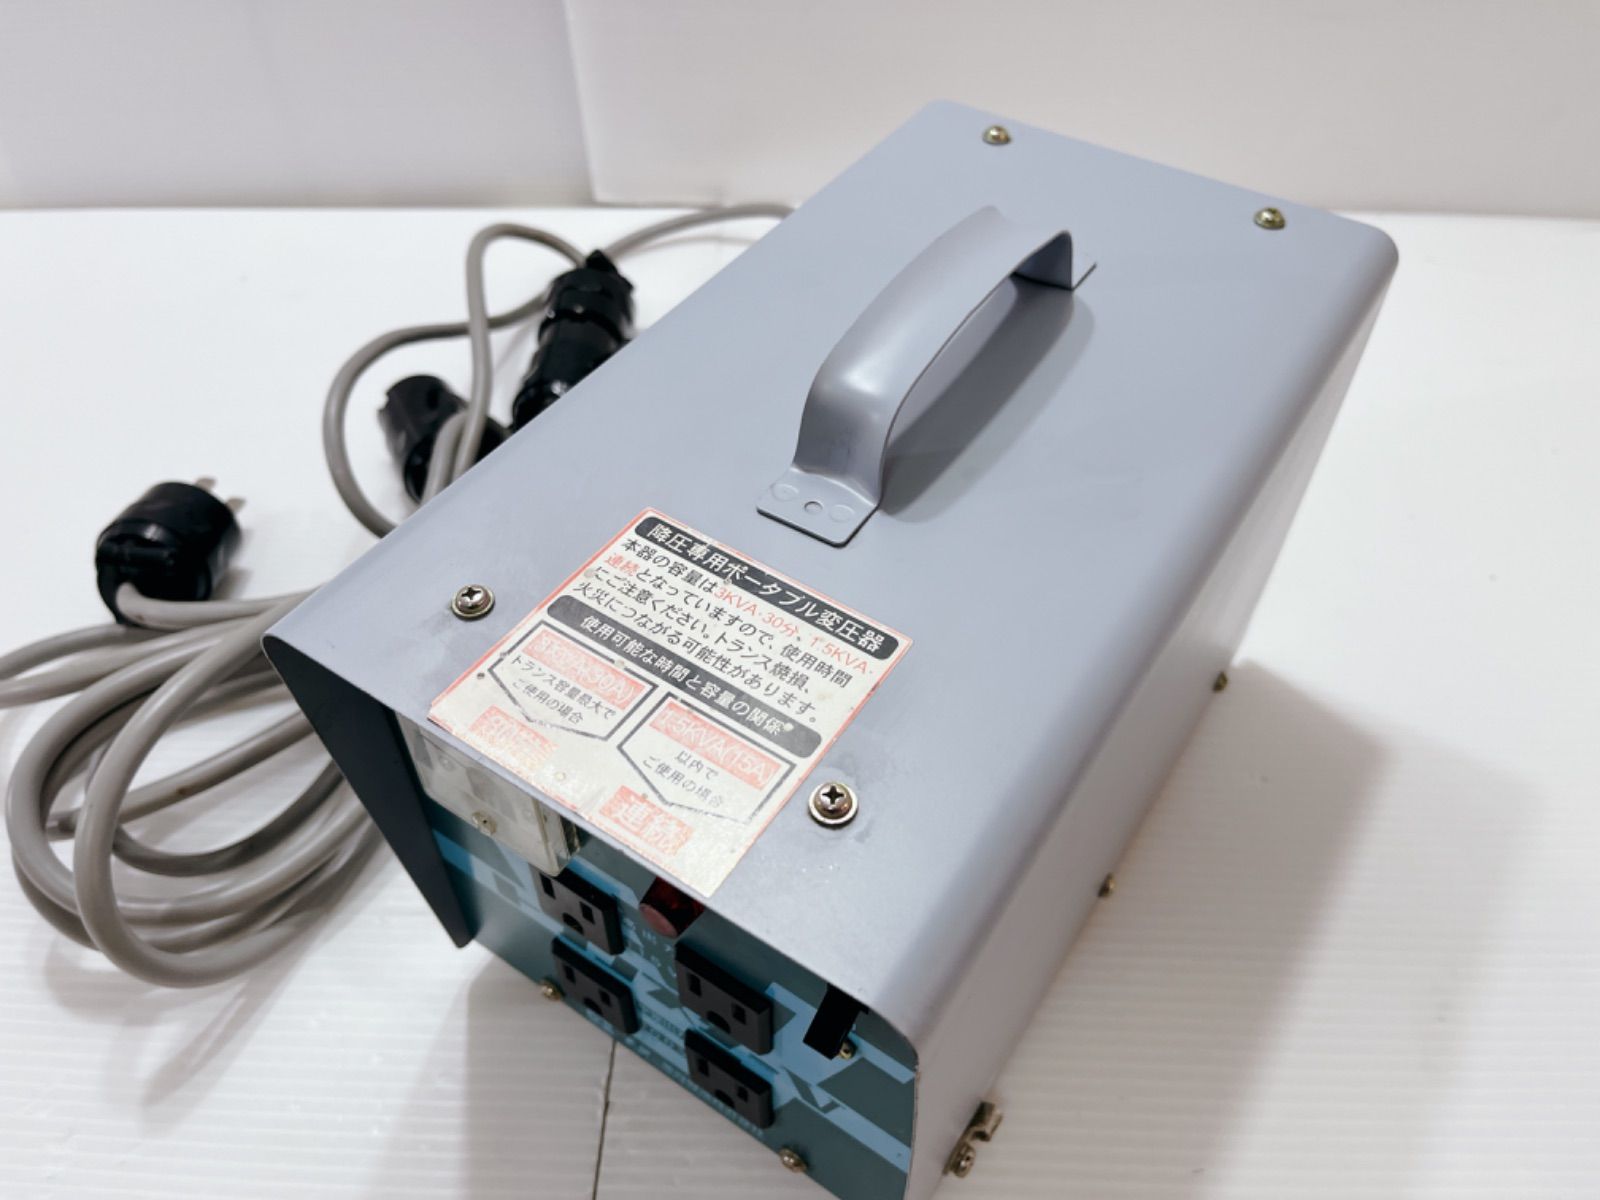 スター電器 トランスターV変圧器 降圧専用入力電圧 200V型式STV-3000